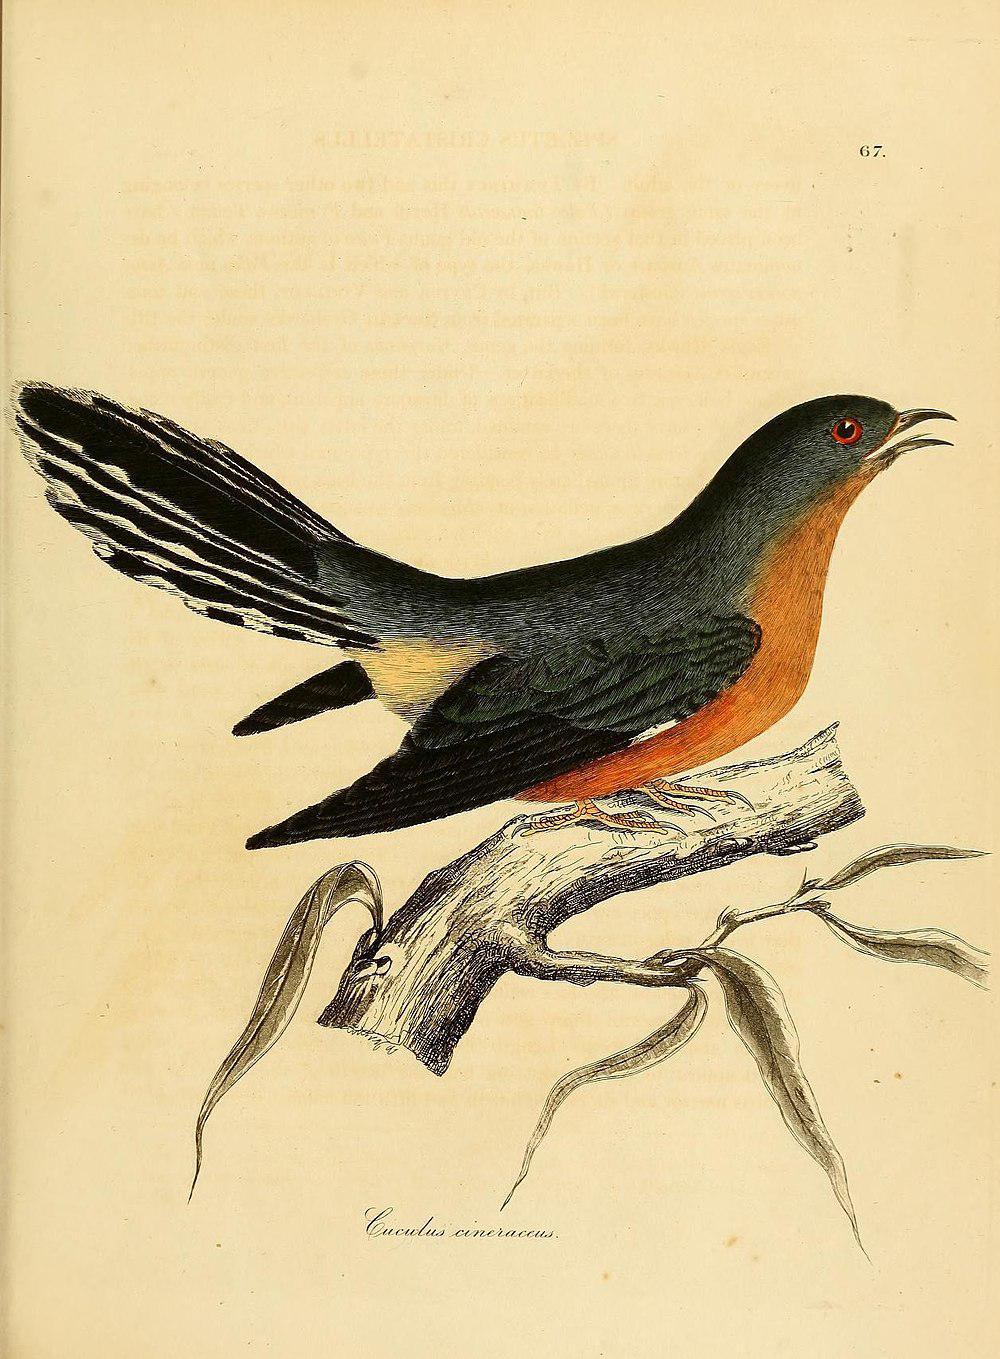 长尾鹃 / Barred Long-tailed Cuckoo / Cercococcyx montanus